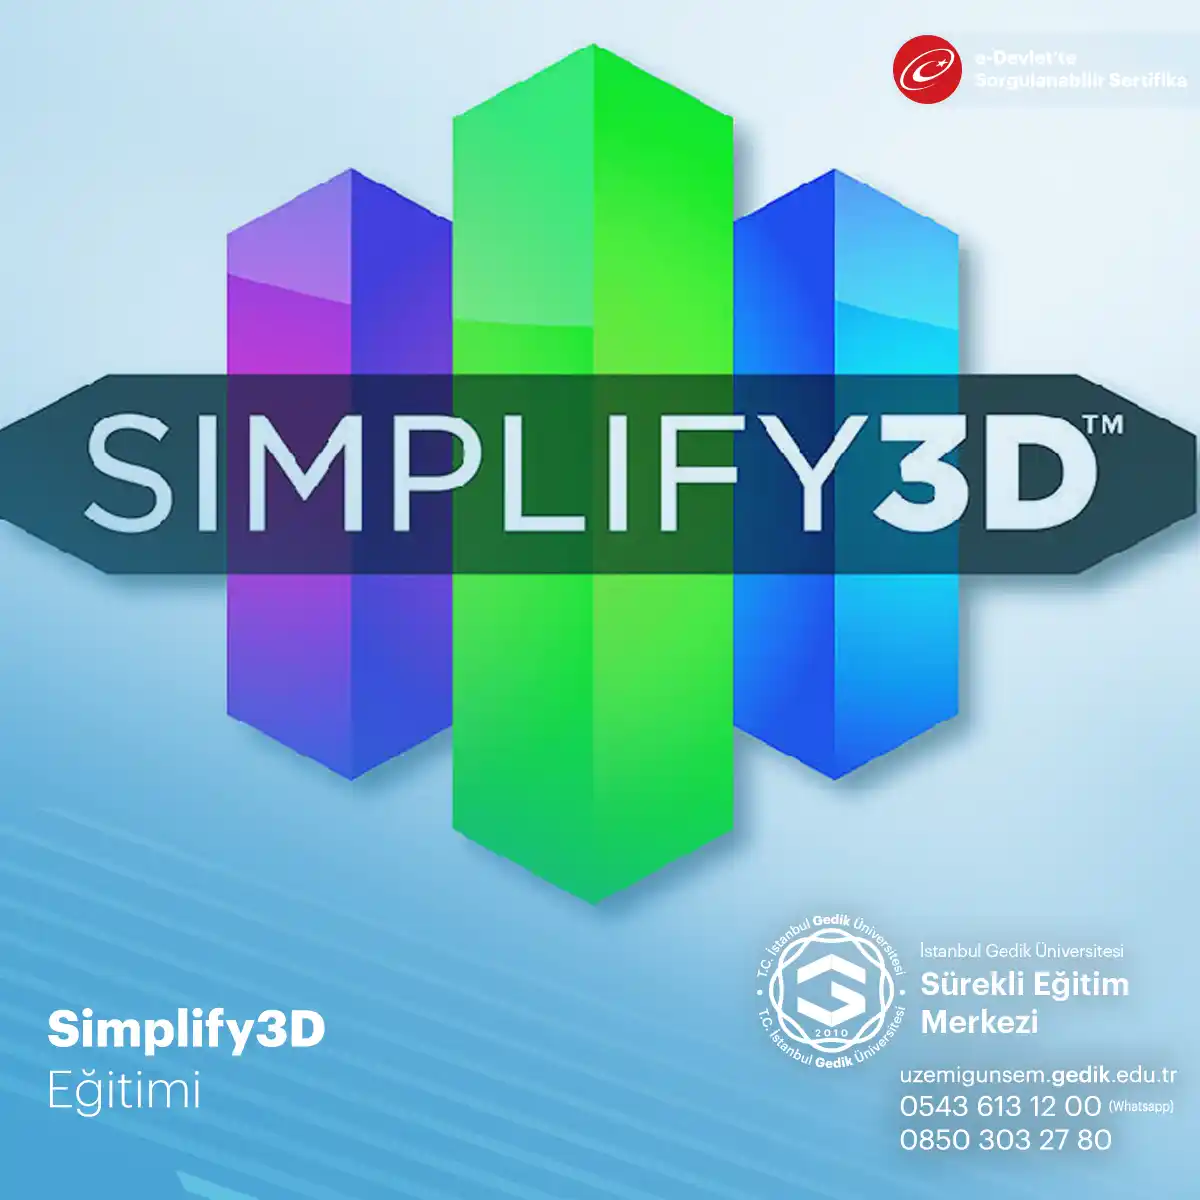  3d baskı tutkunları için Simplify3d 3d baskıda entegre yazılım çözümü olduğunu ve özellikleri ile güçlü bir dilimleyici olduğunu söyleyebiliriz. 